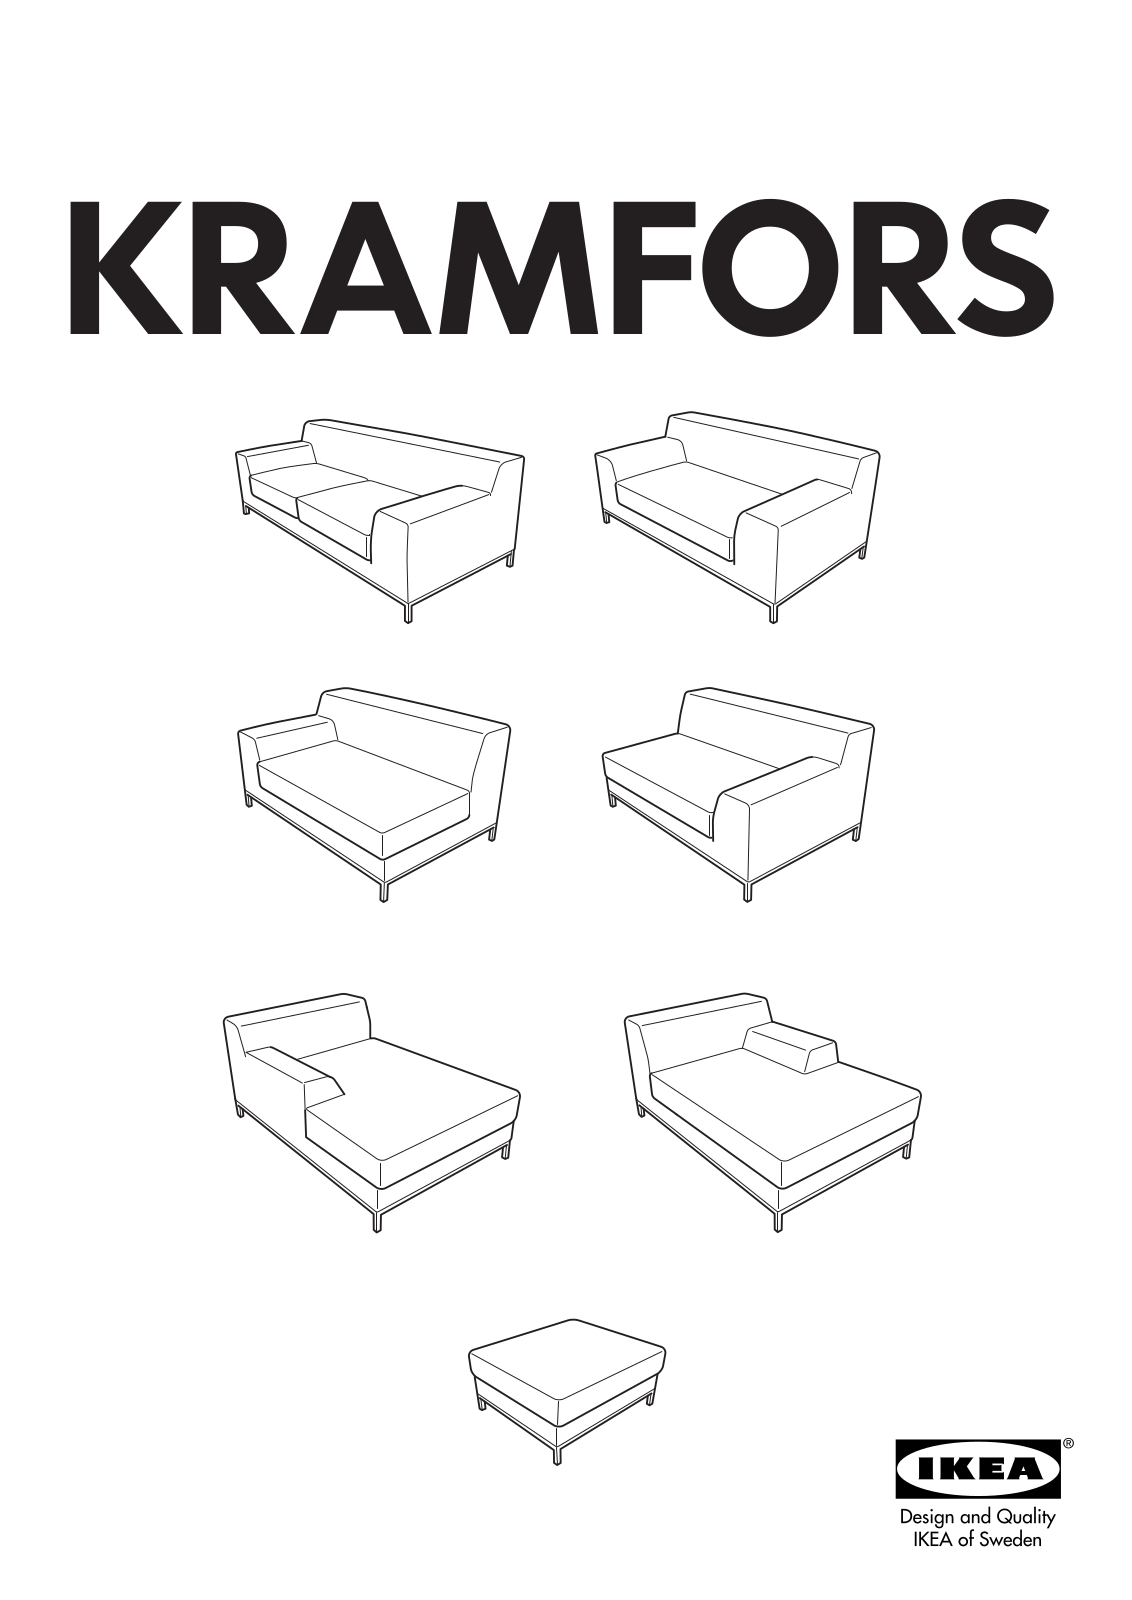 IKEA KRAMFORS RIGHT HAND CHAISE, KRAMFORS LEFT CHAISE, KRAMFORS RIGHT LOVESEAT UNIT User Manual